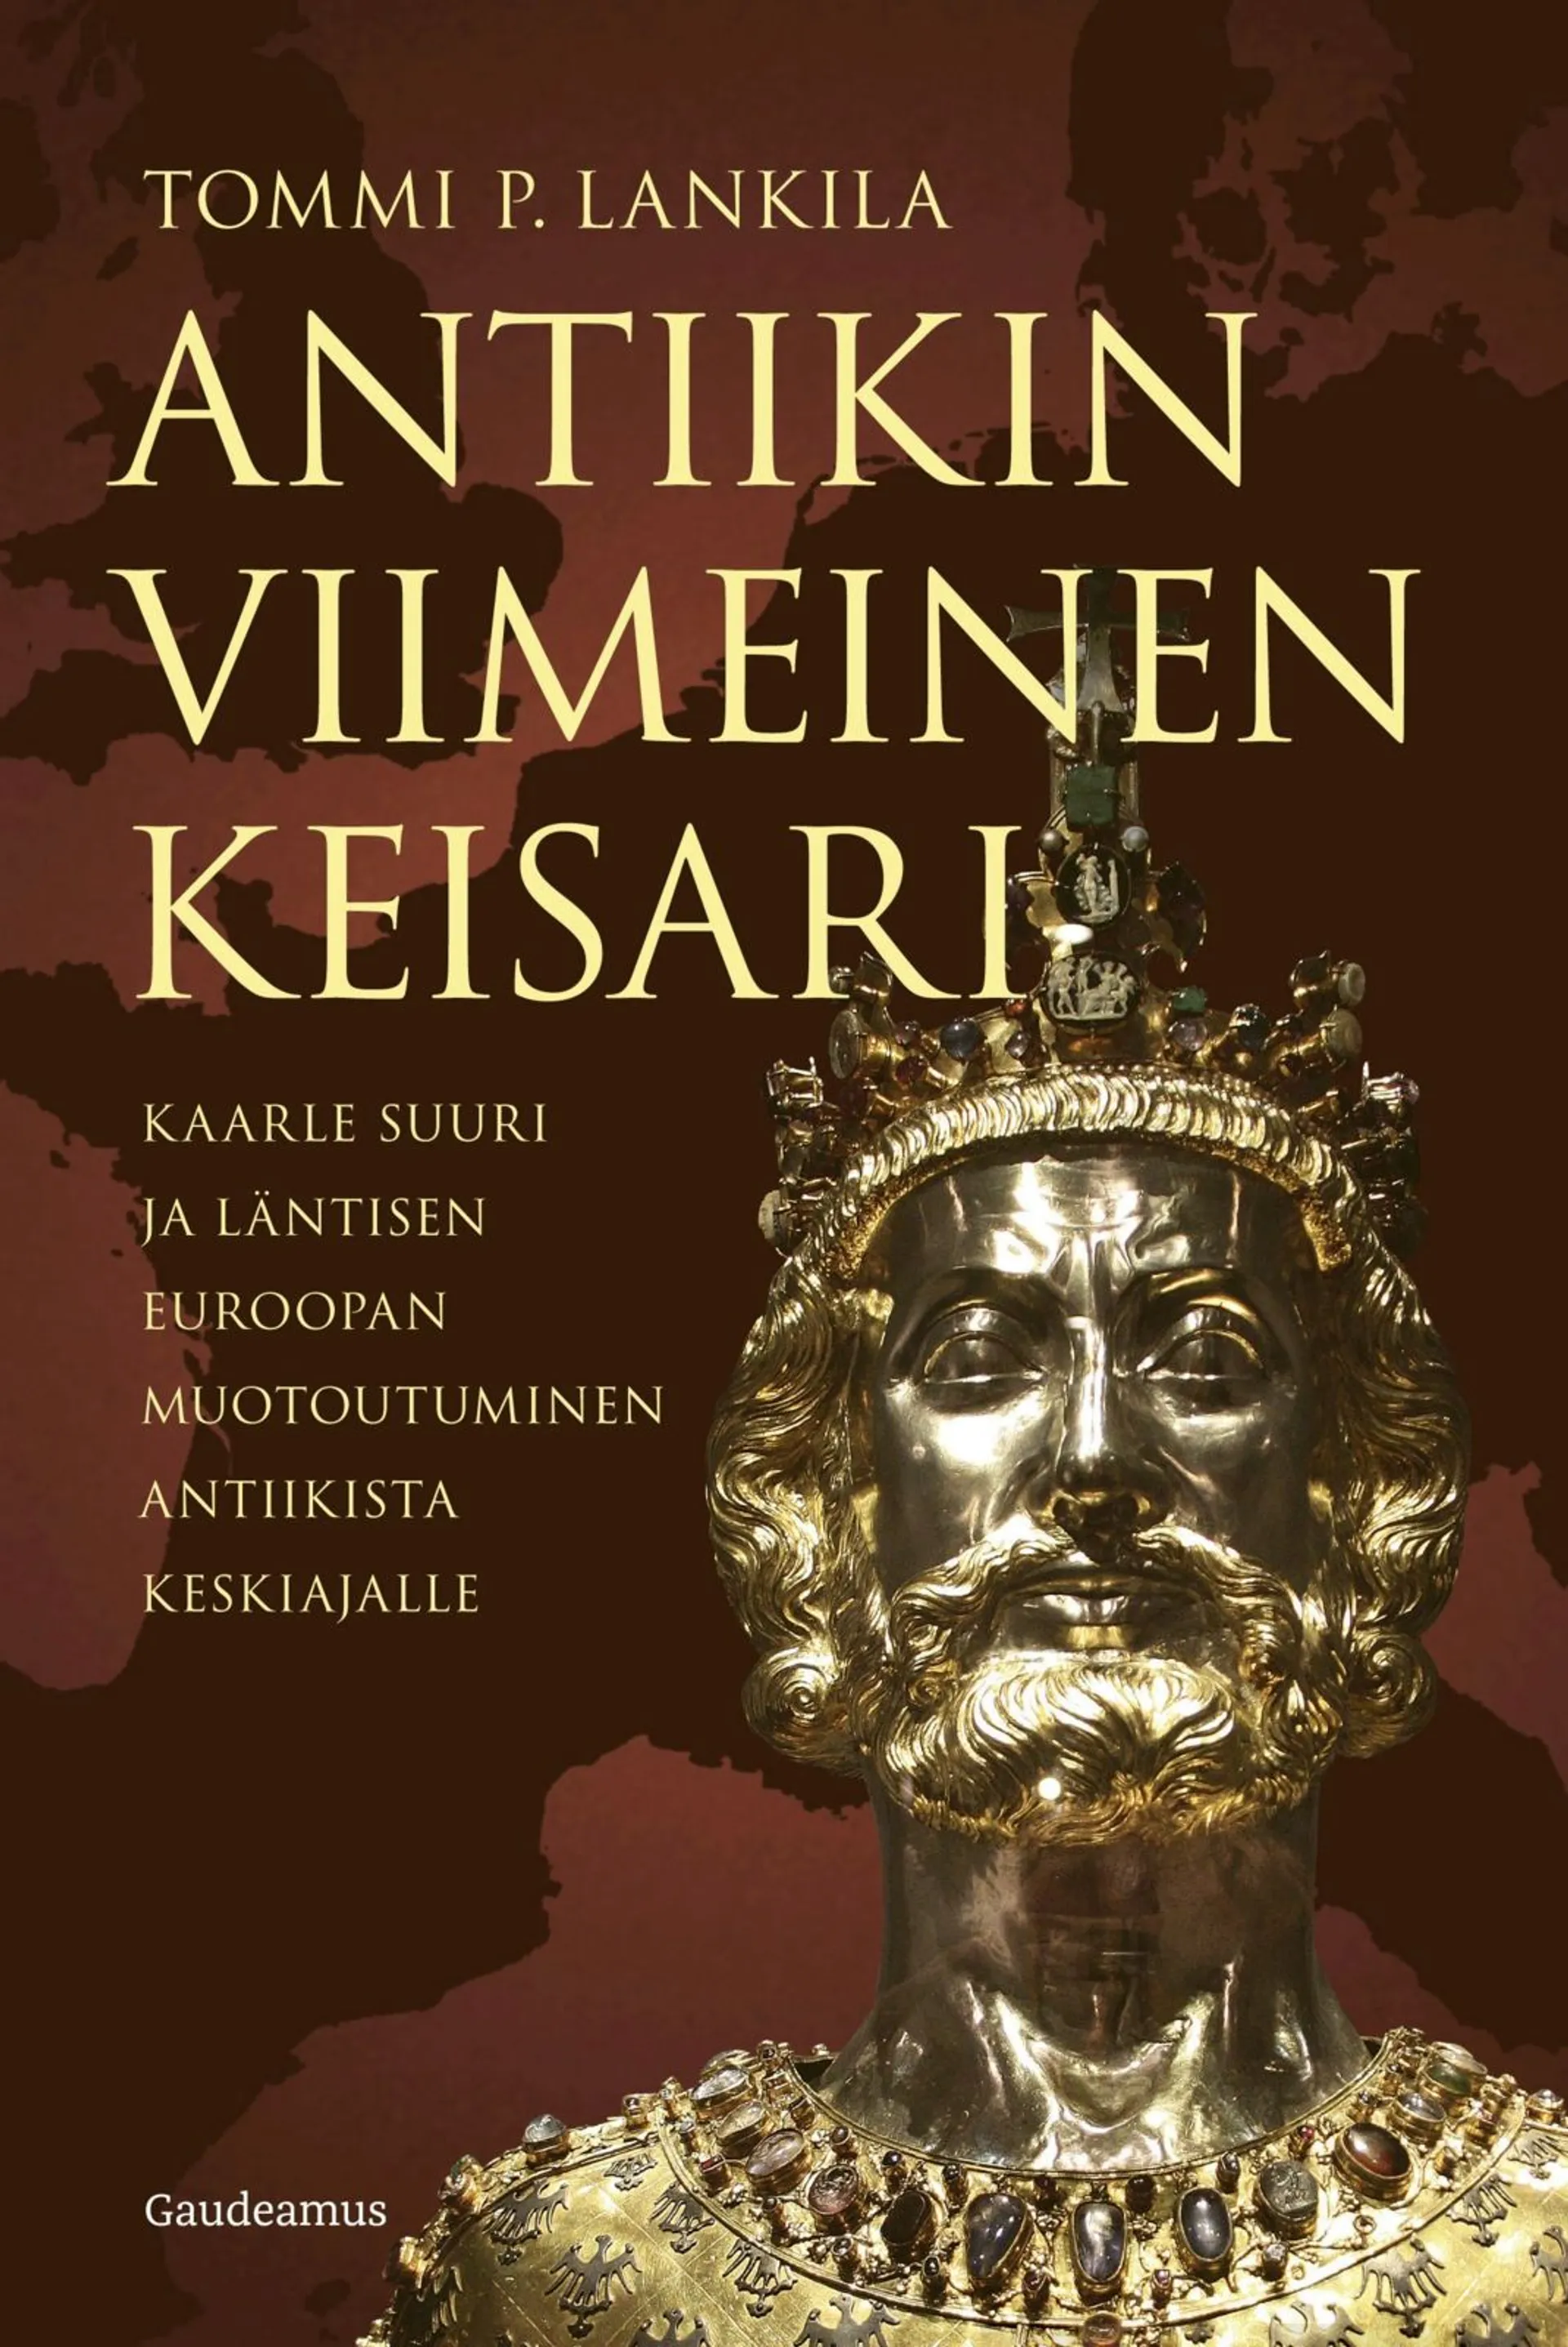 Lankila, Antiikin viimeinen keisari - Kaarle Suuri ja läntisen Euroopan muotoutuminen antiikista keskiajalle